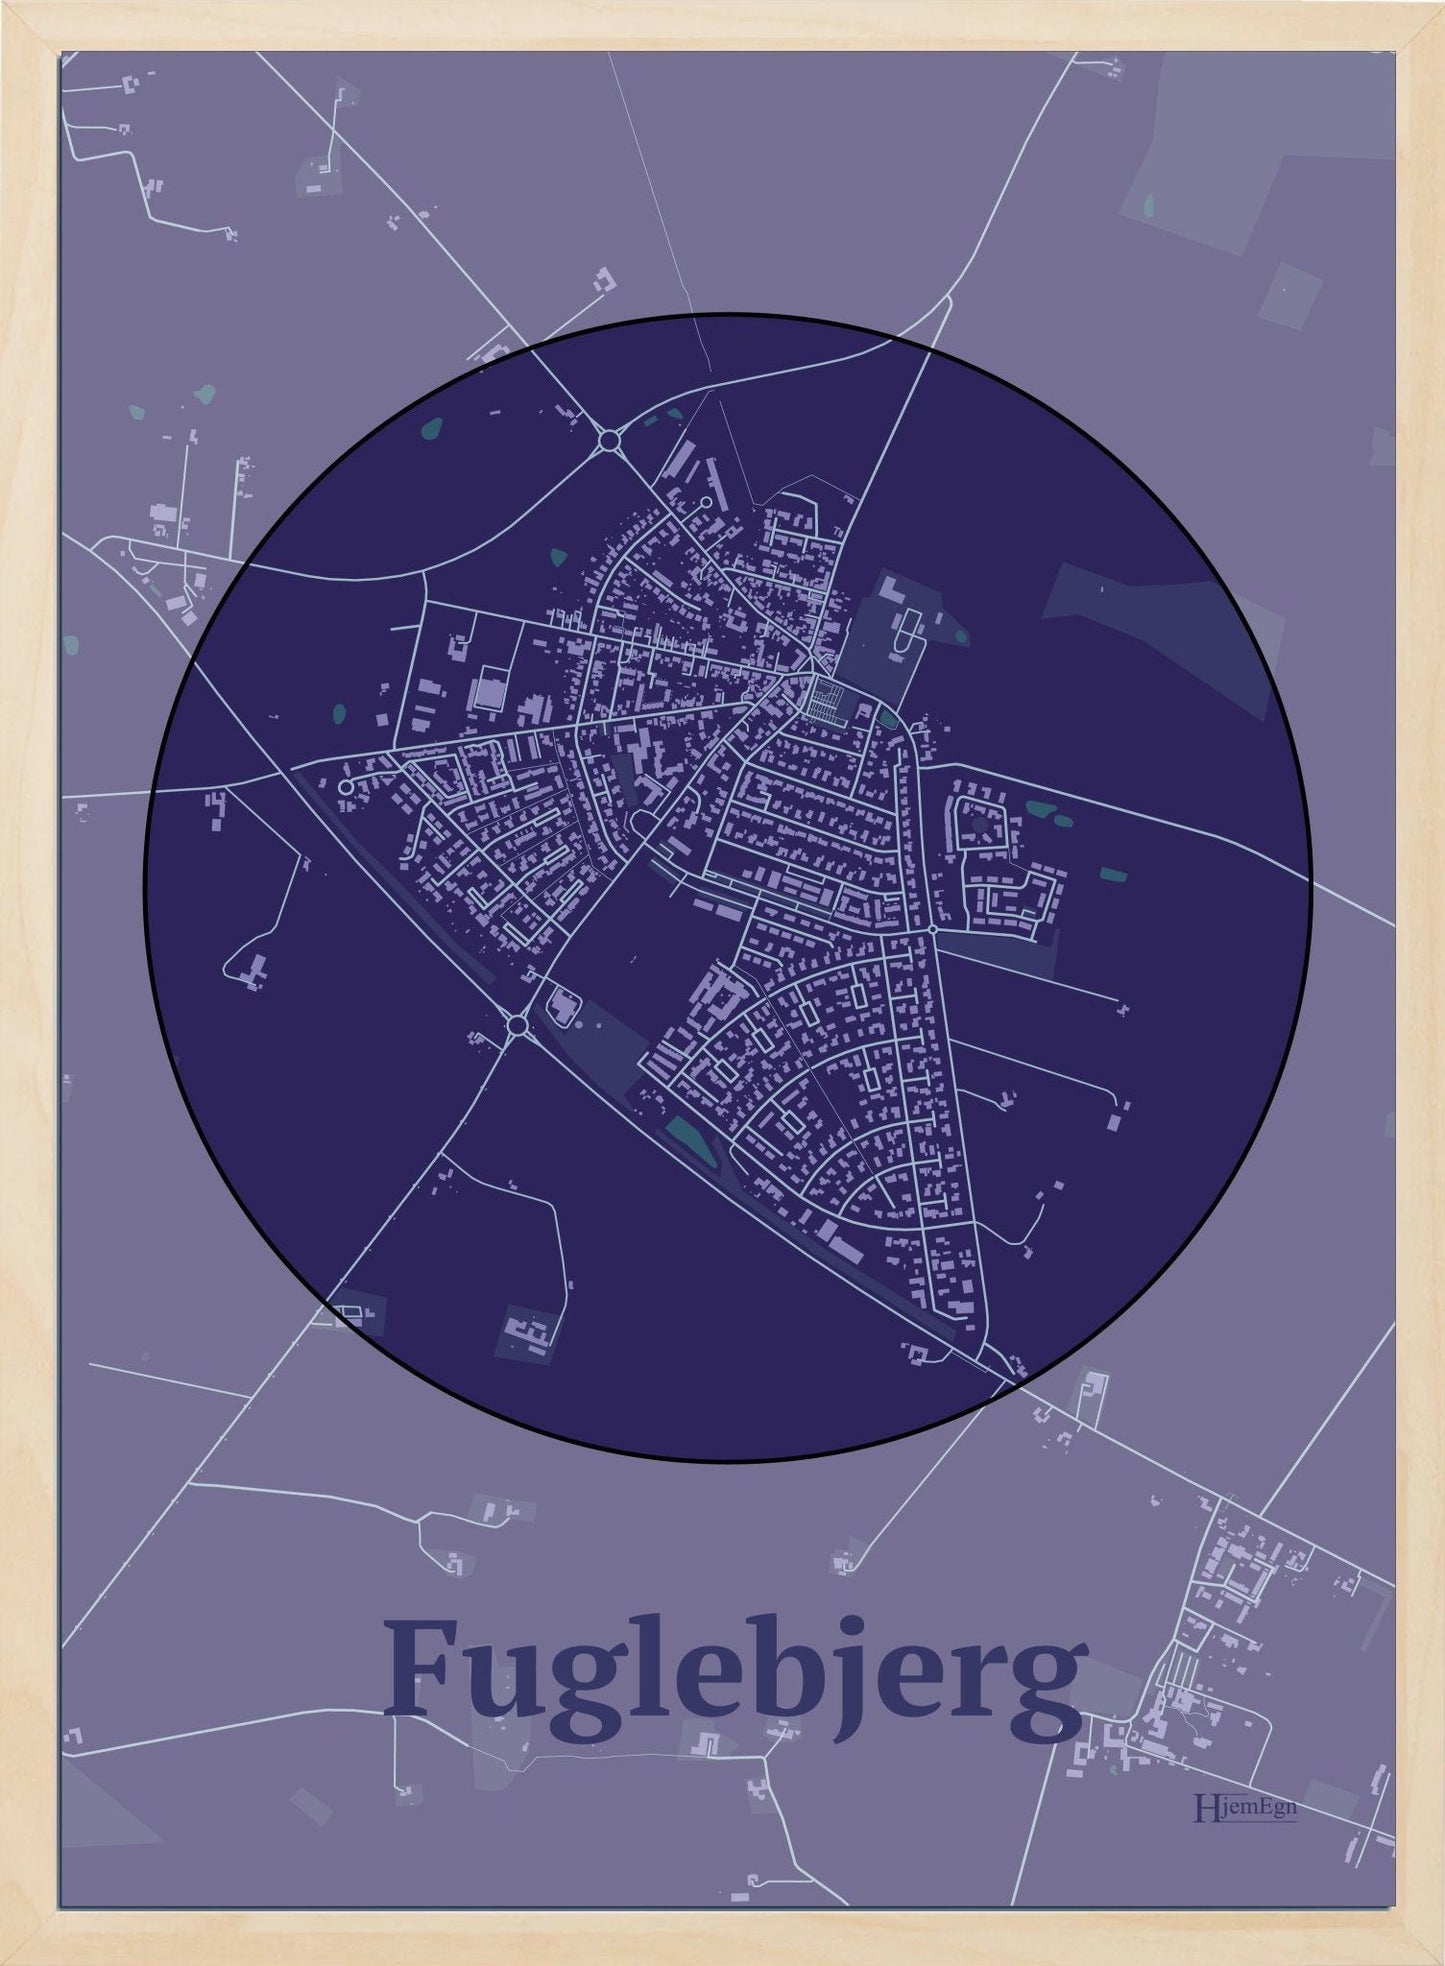 Fuglebjerg plakat i farve mørk lilla og HjemEgn.dk design centrum. Design bykort for Fuglebjerg